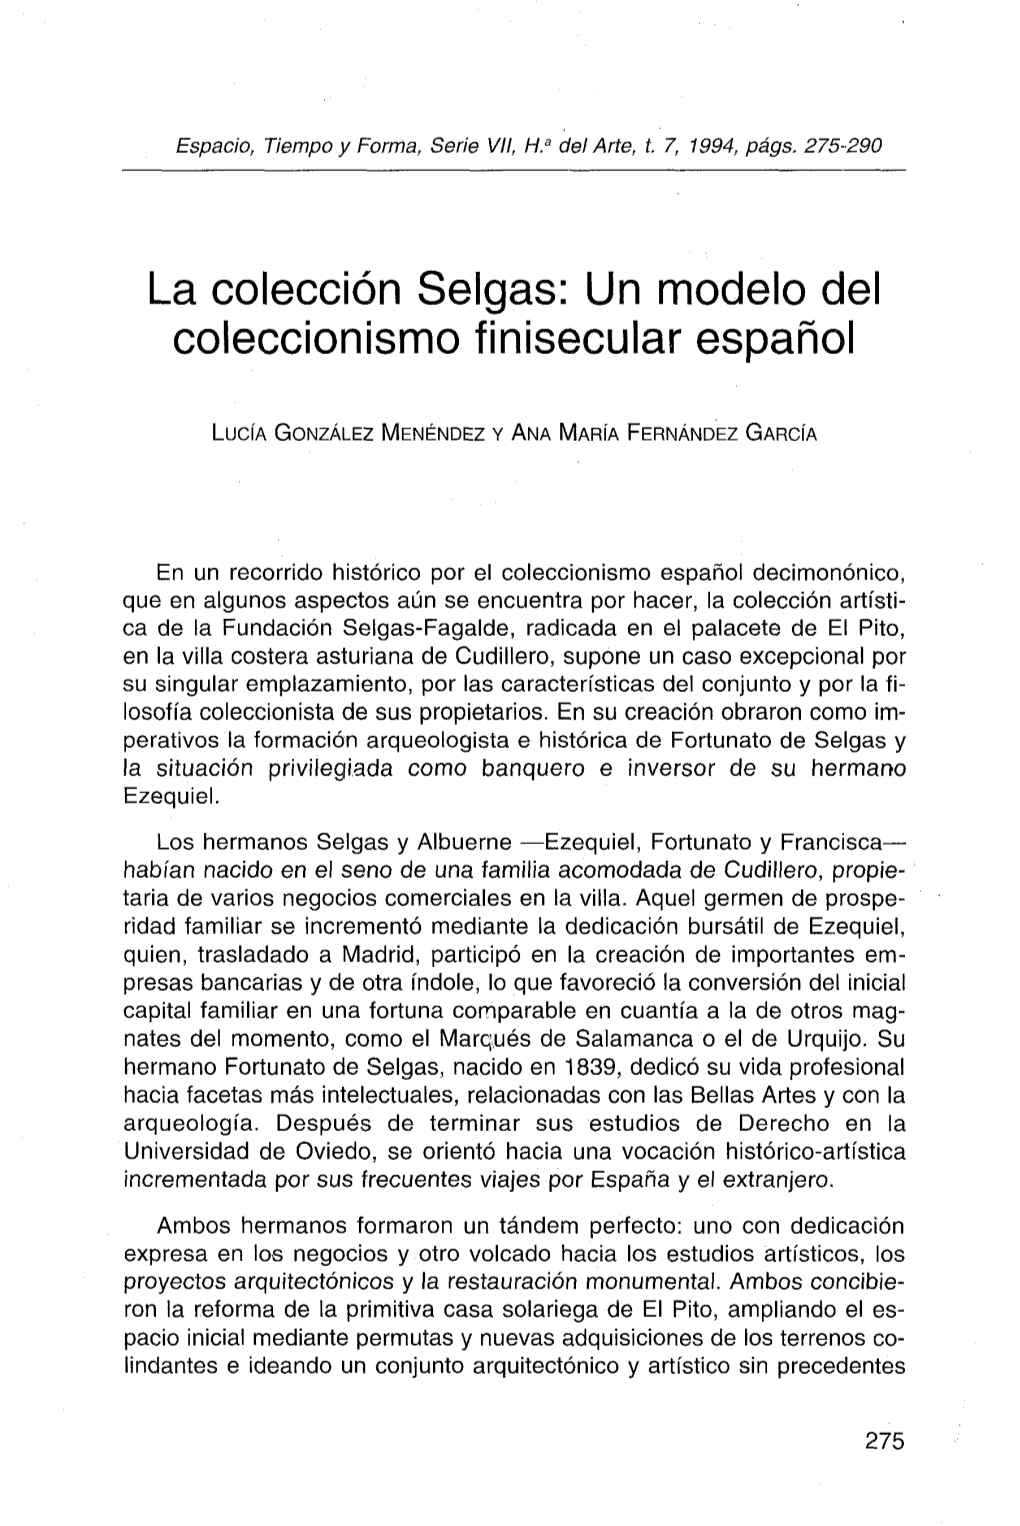 La Colección Selgas. Modelo Del Coleccionismo Finisecular Español